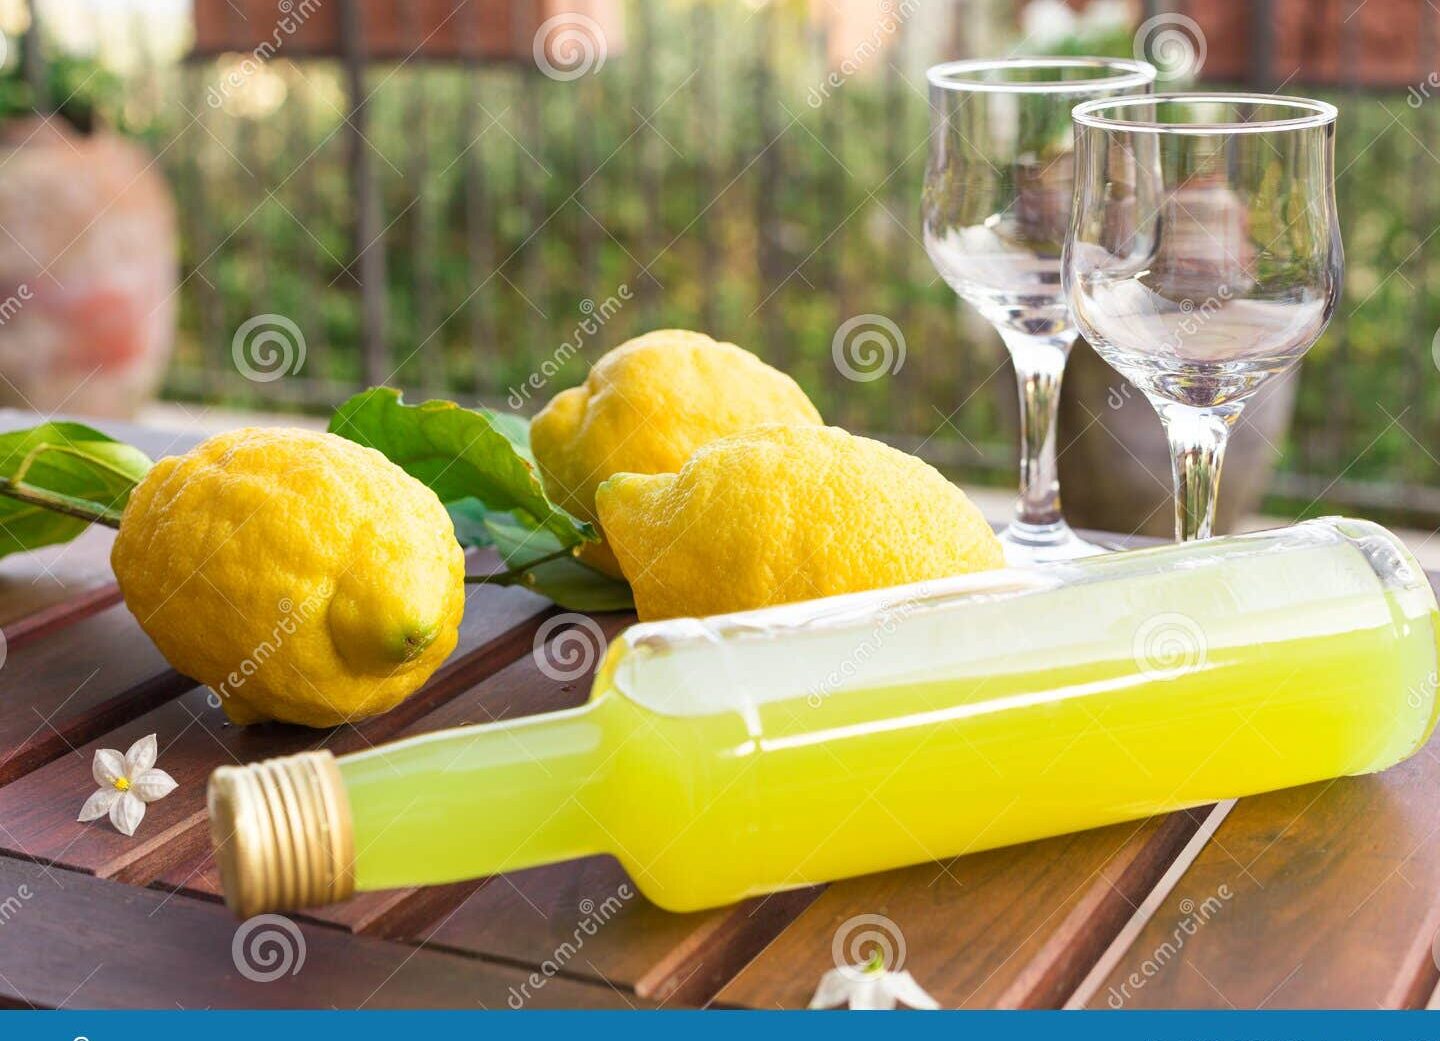 botella de limoncello con limones frescos alrededor